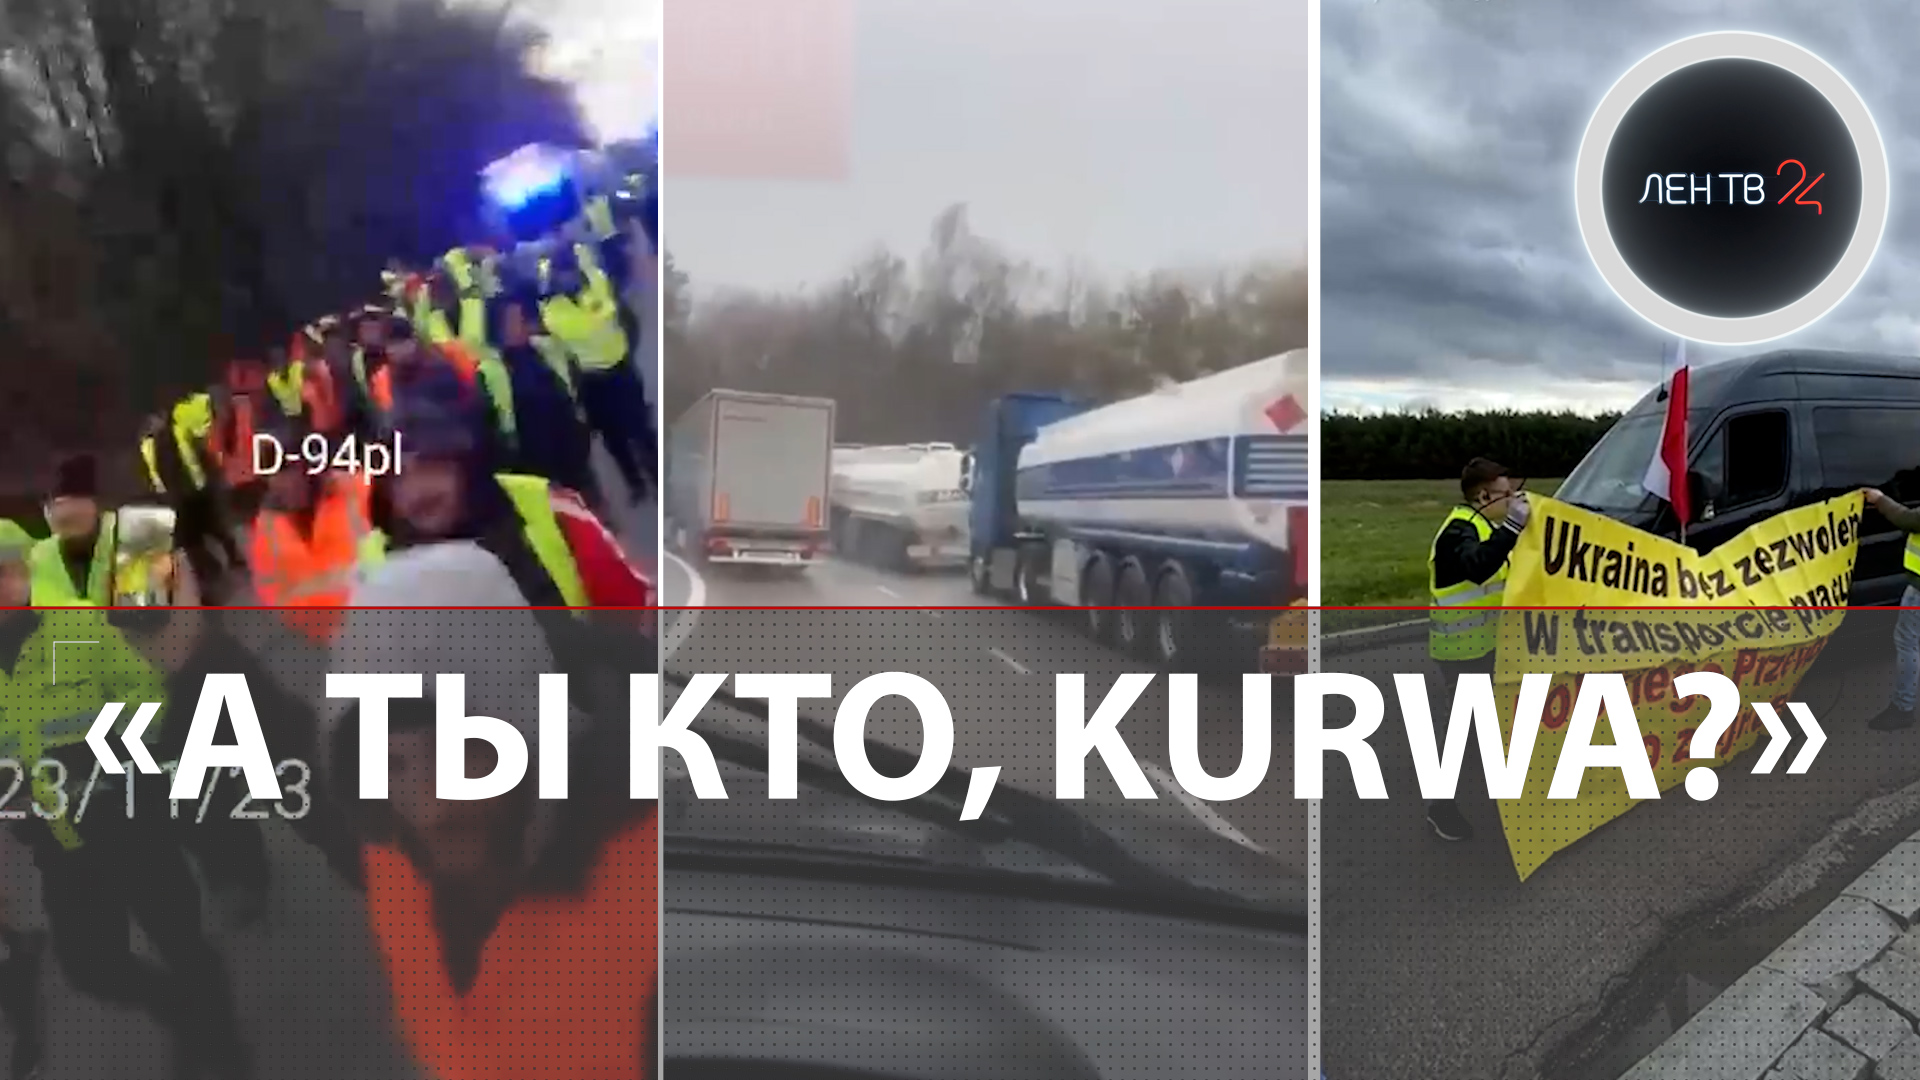 Kurwa на границе | Поляки блокируют украинские грузовики | Дальнобойщики Словакии поддержали протест